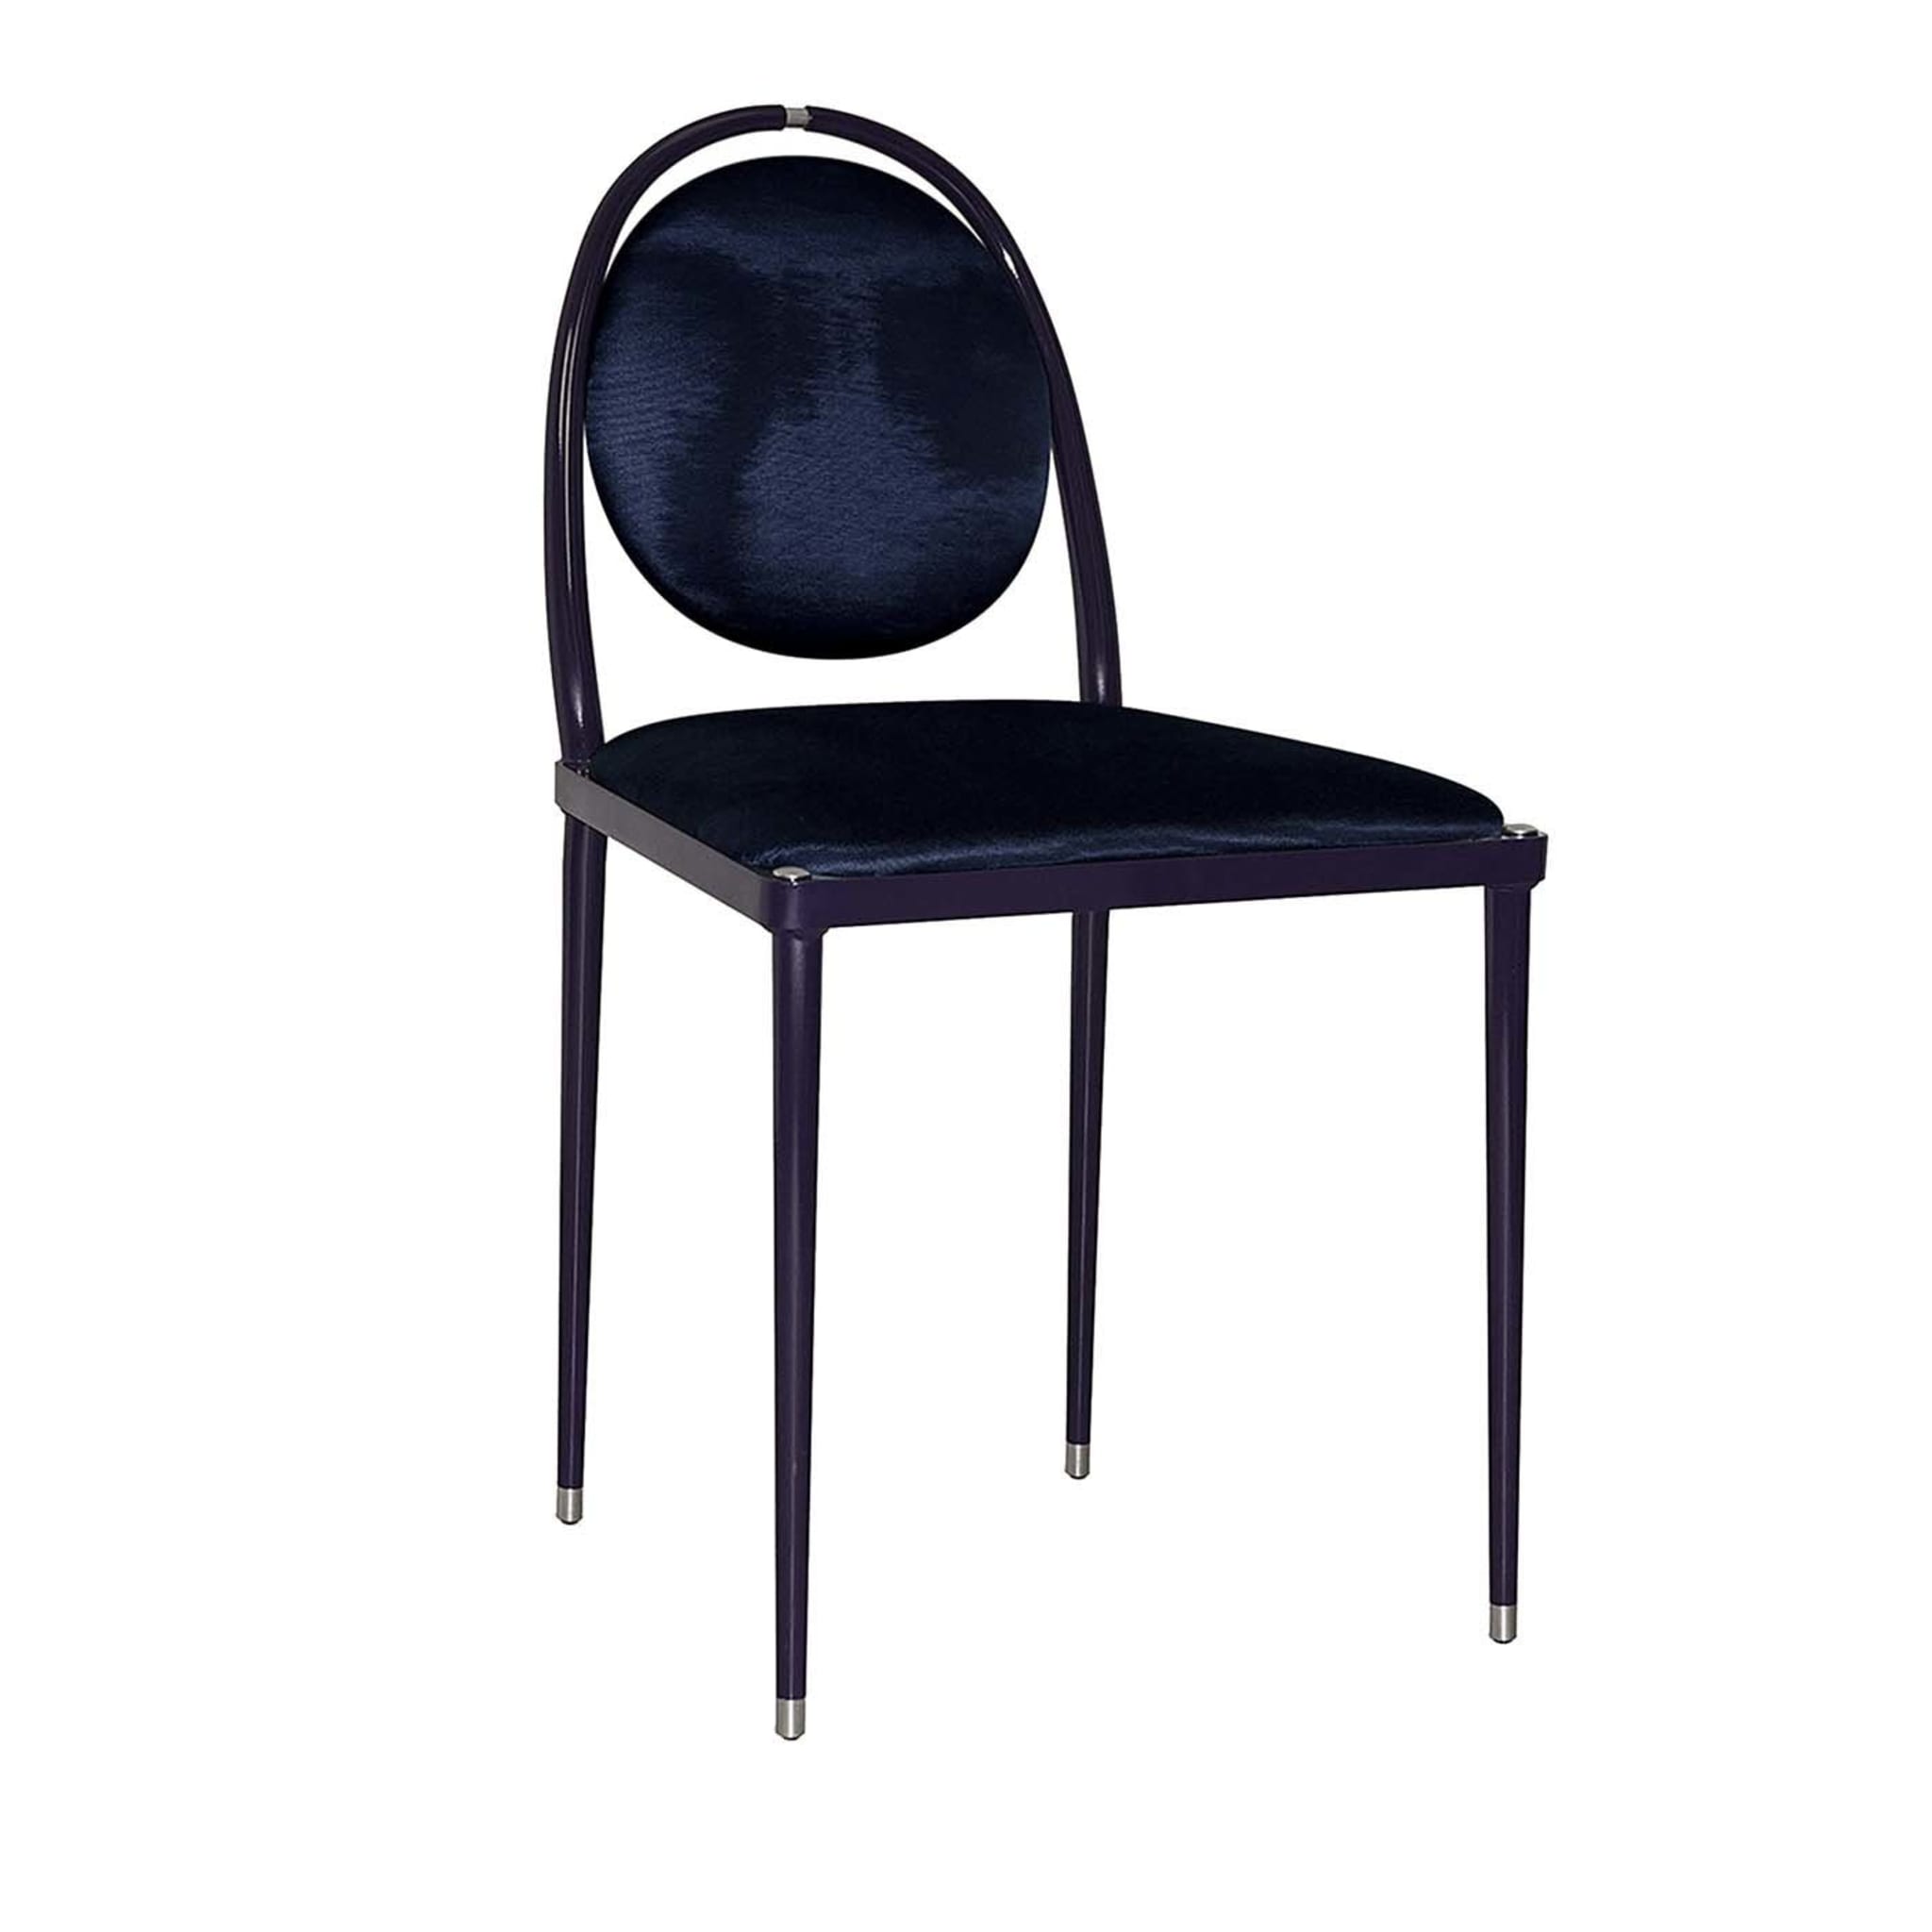 Balzaretti Purple Chair - Main view